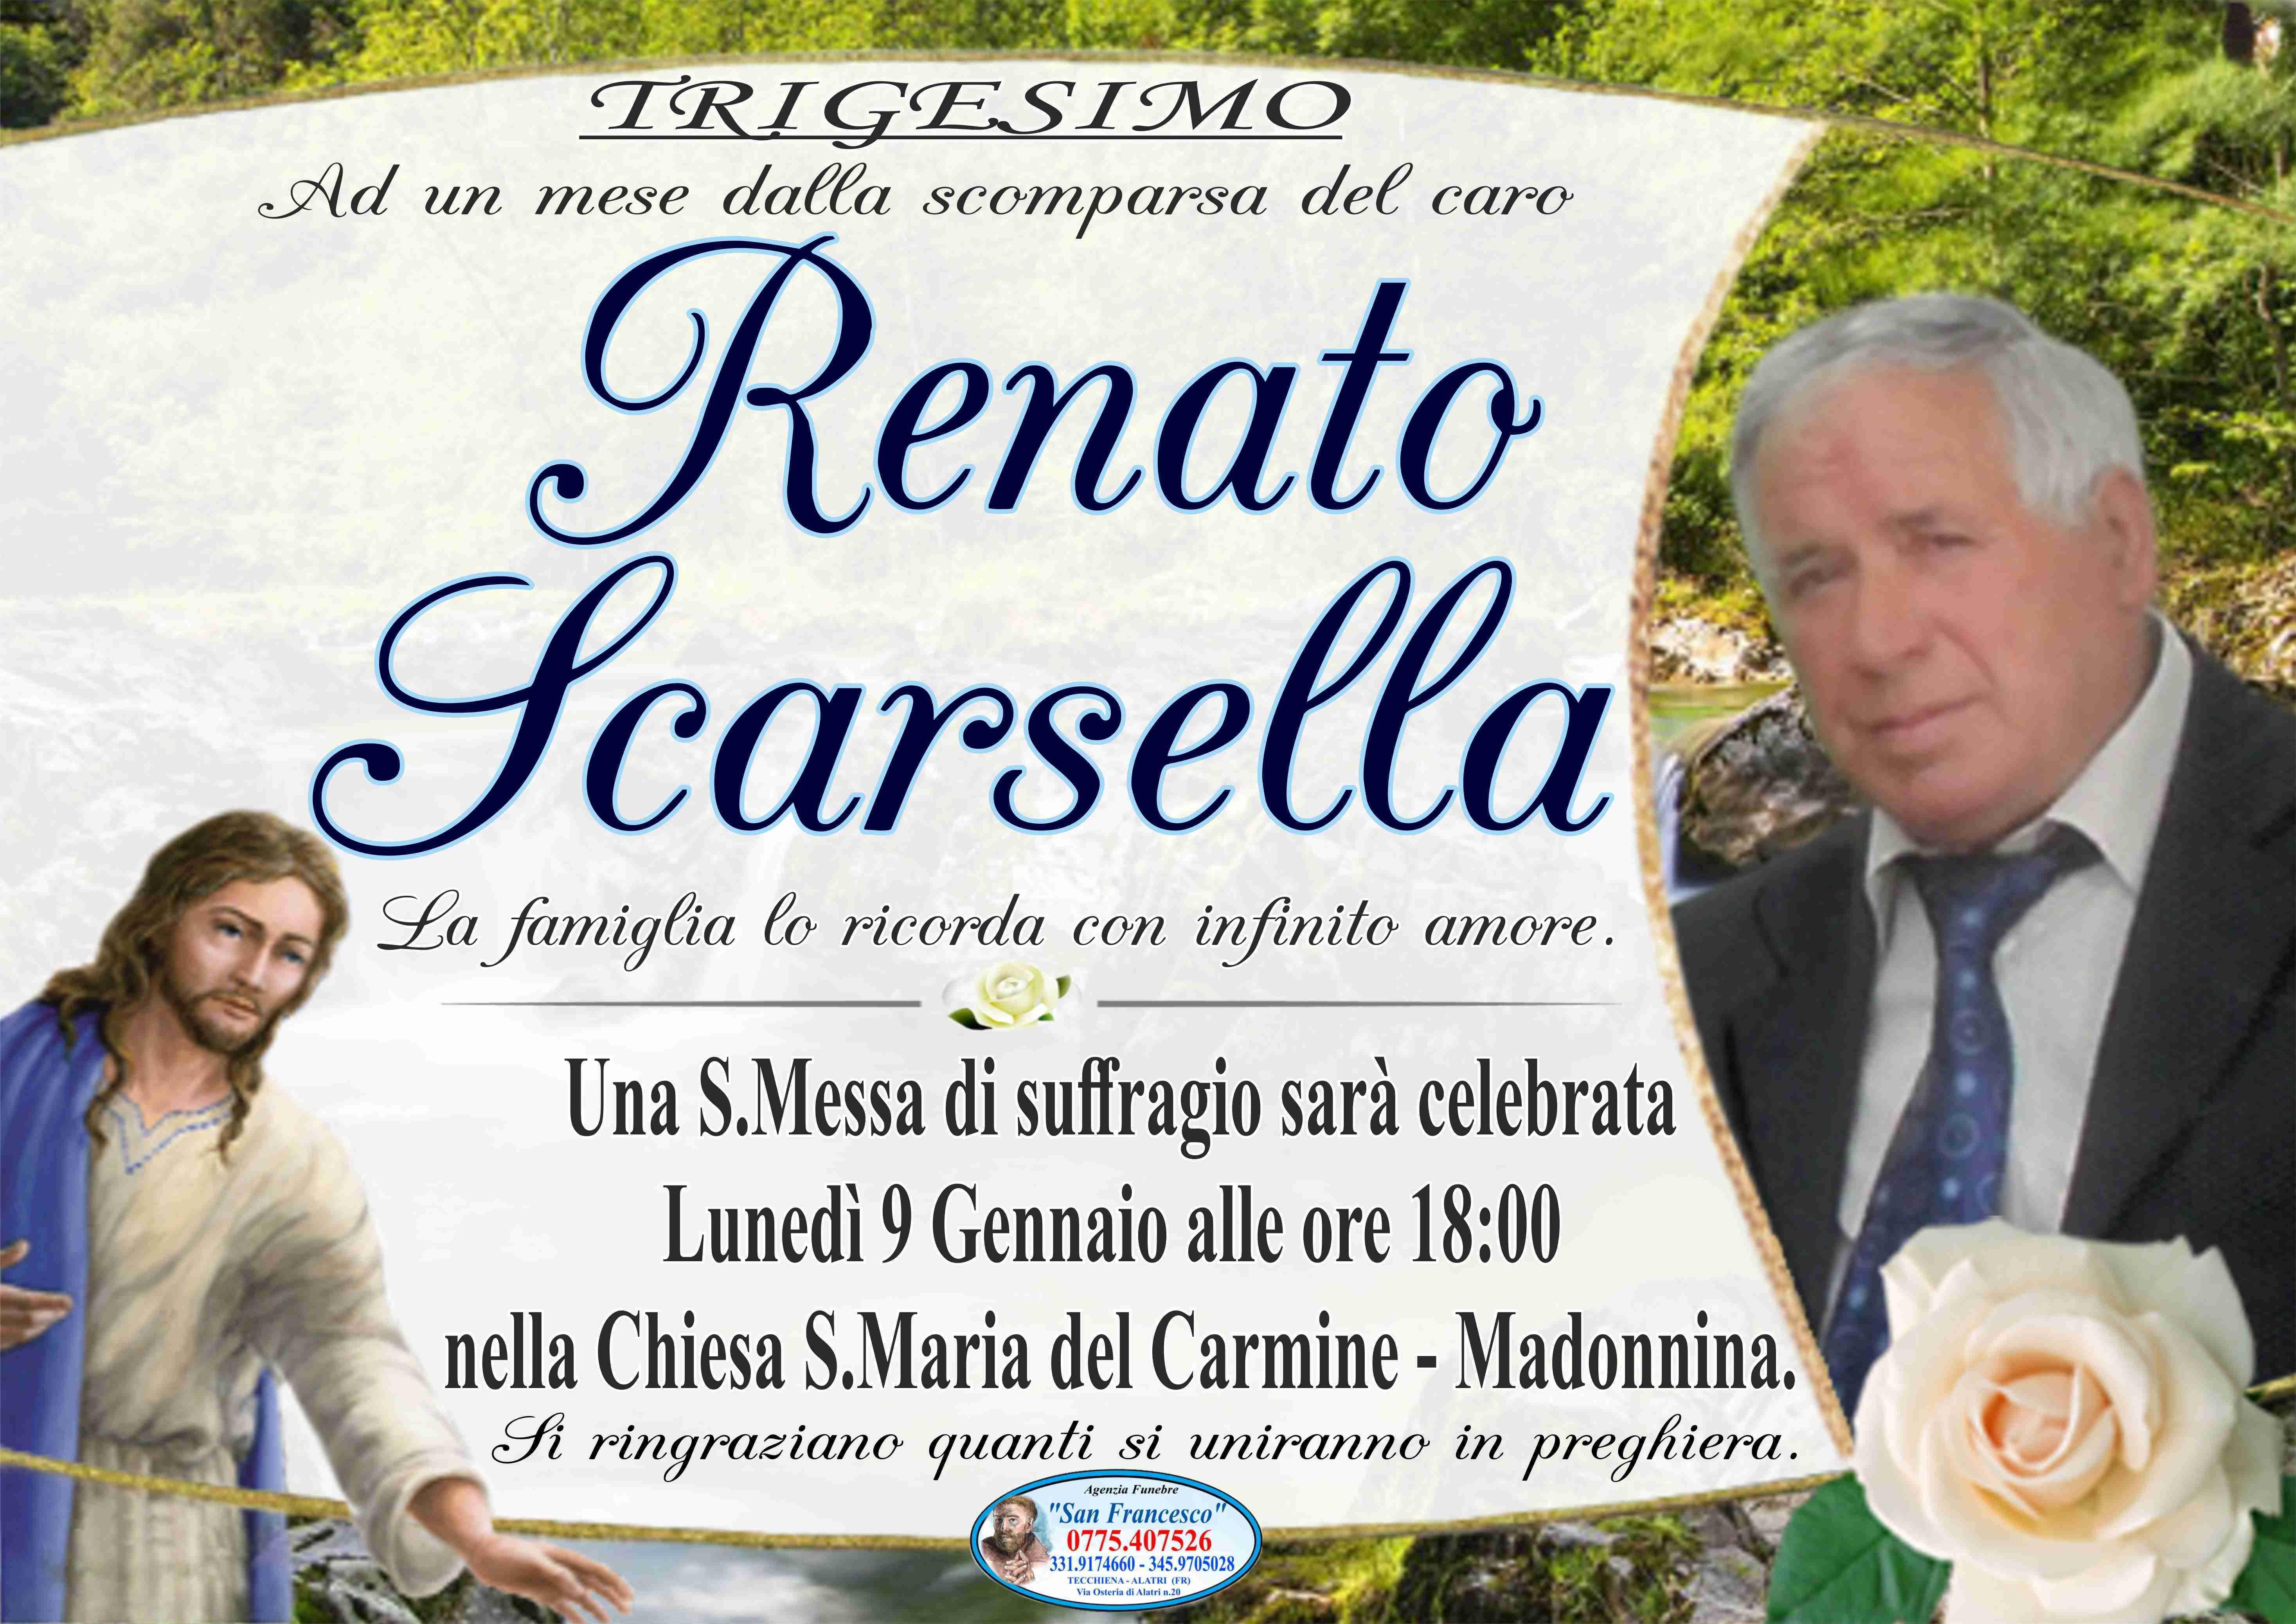 Renato Scarsella